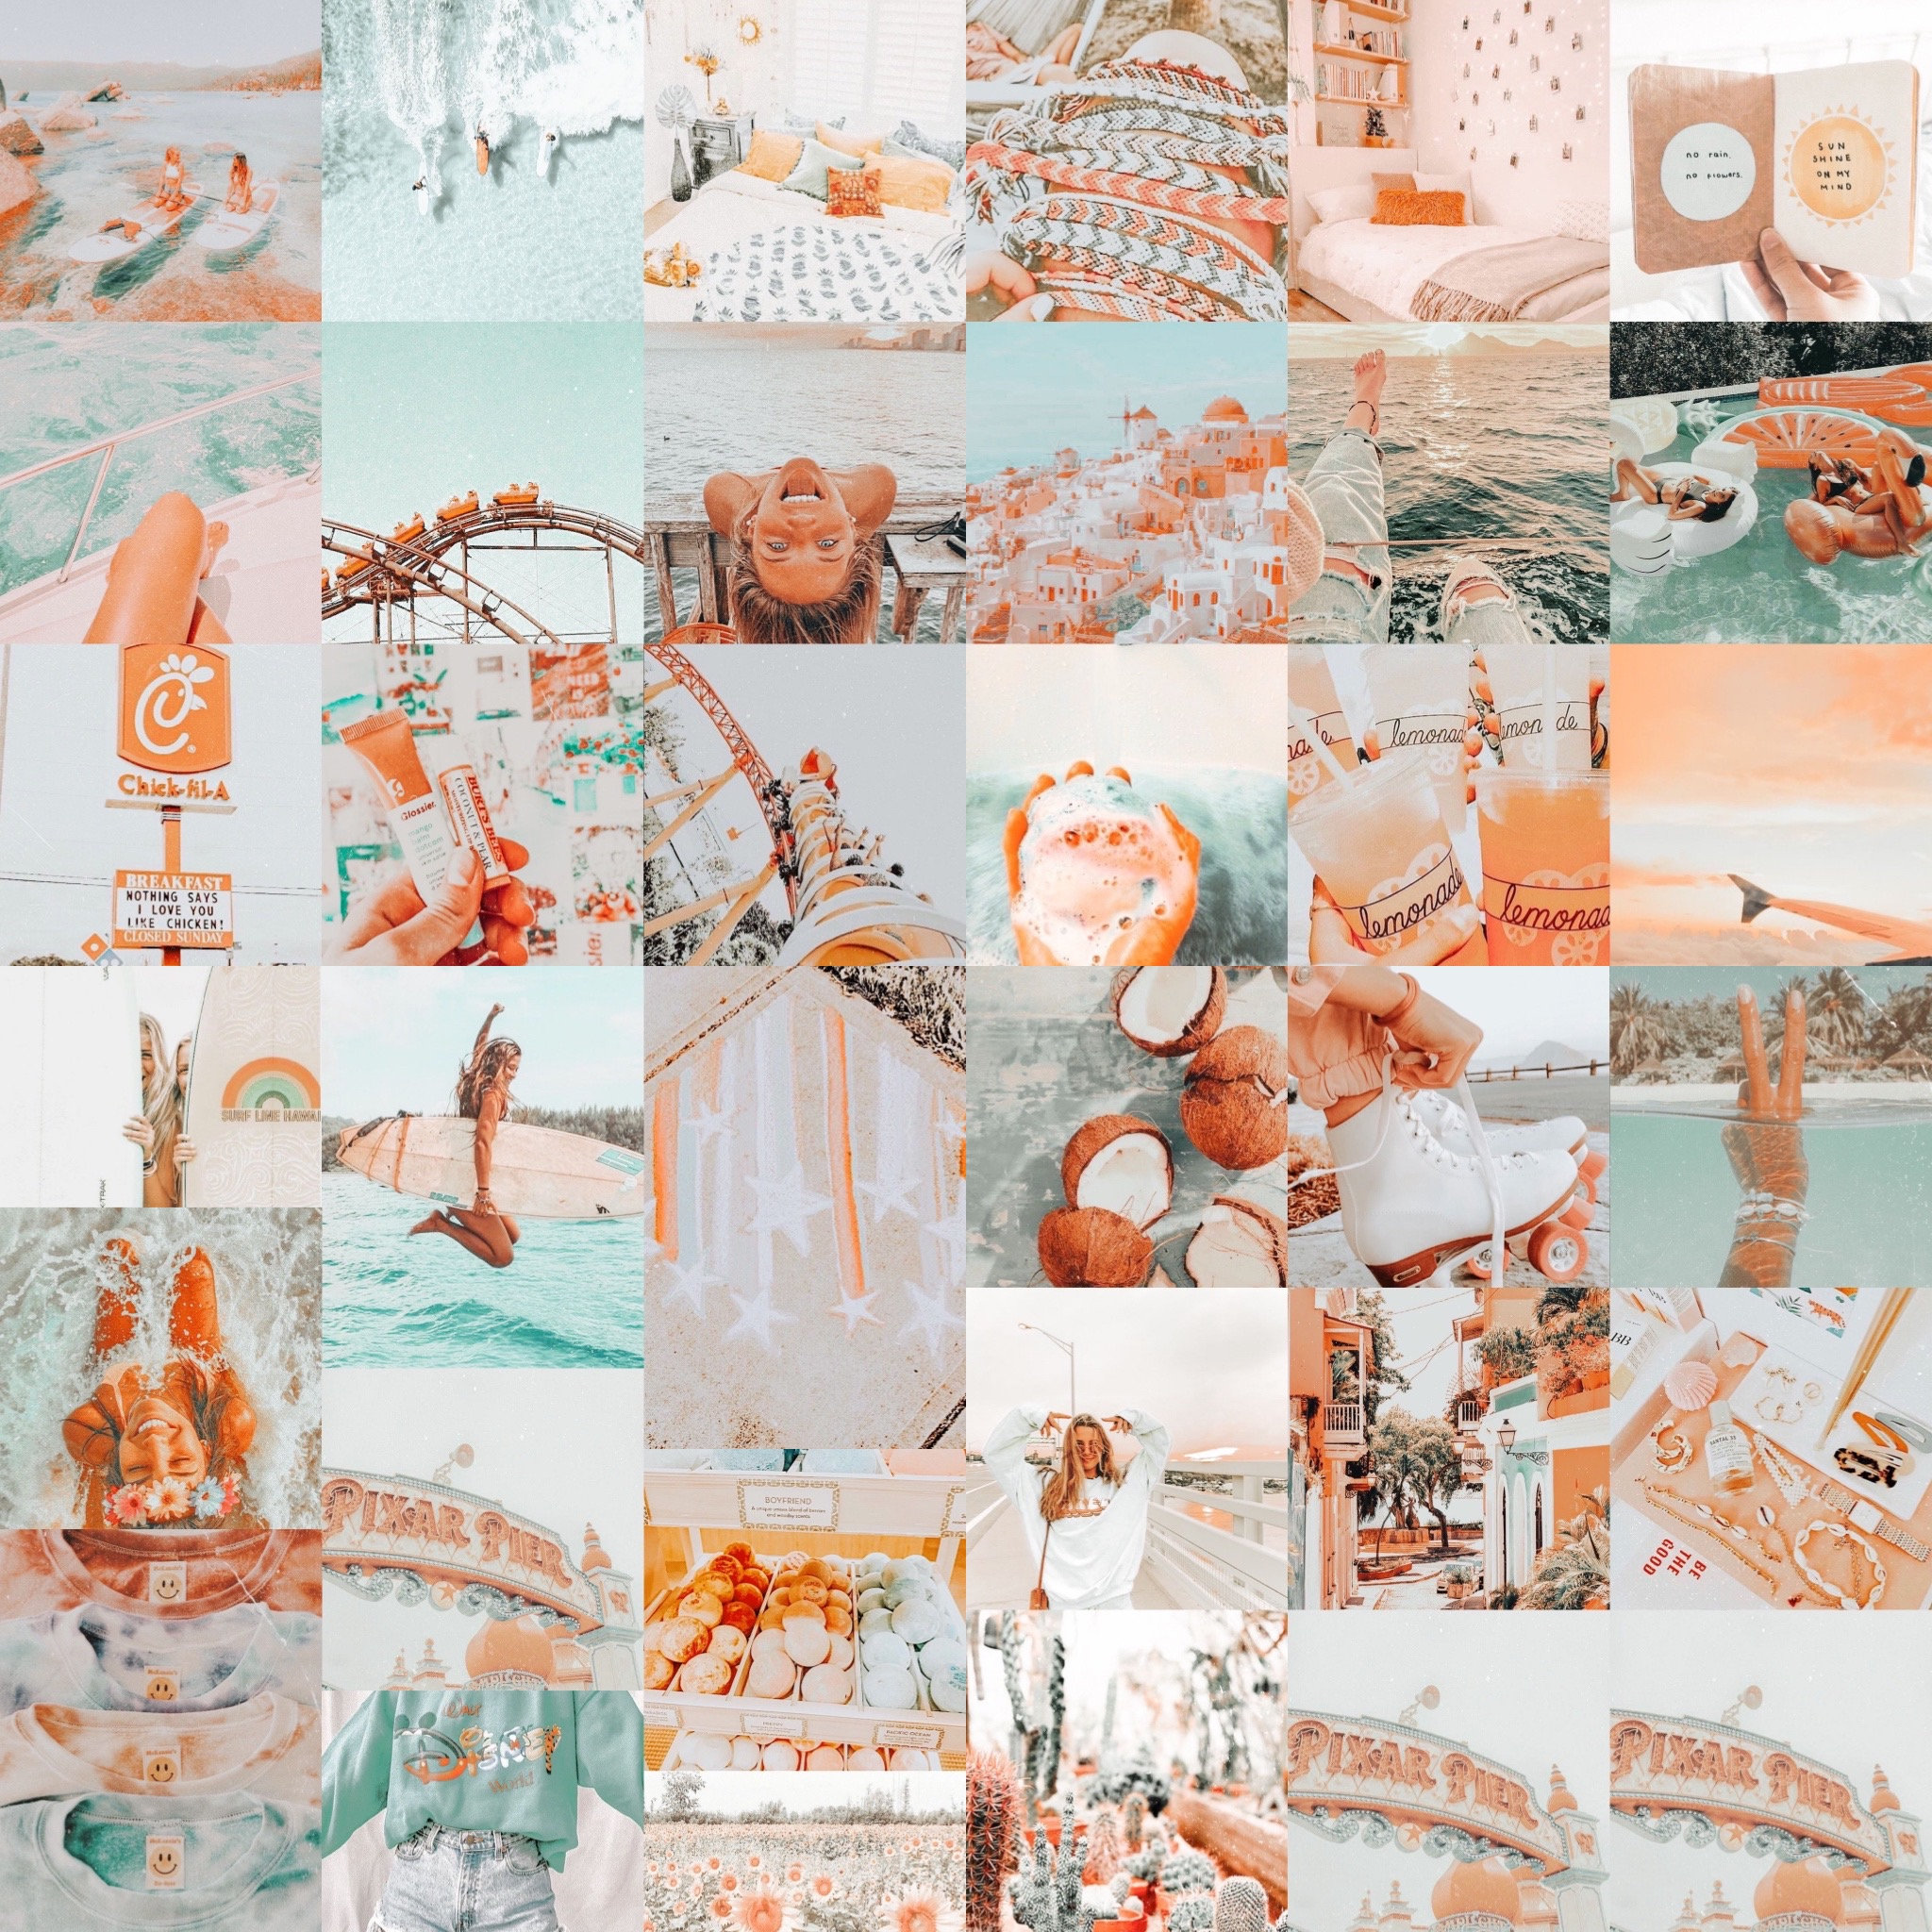 Orange and Teal Collage Kit sẽ giúp cho căn phòng của bạn tươi tắn và đầy sáng tạo hơn. Với những hình ảnh được thiết kế đầy màu sắc, bạn có thể tạm biệt những căng thẳng trong công việc để thư giãn tinh thần. Hãy sắp xếp những mảnh ghép này để tạo nên bức tranh tuyệt đẹp của riêng bạn!